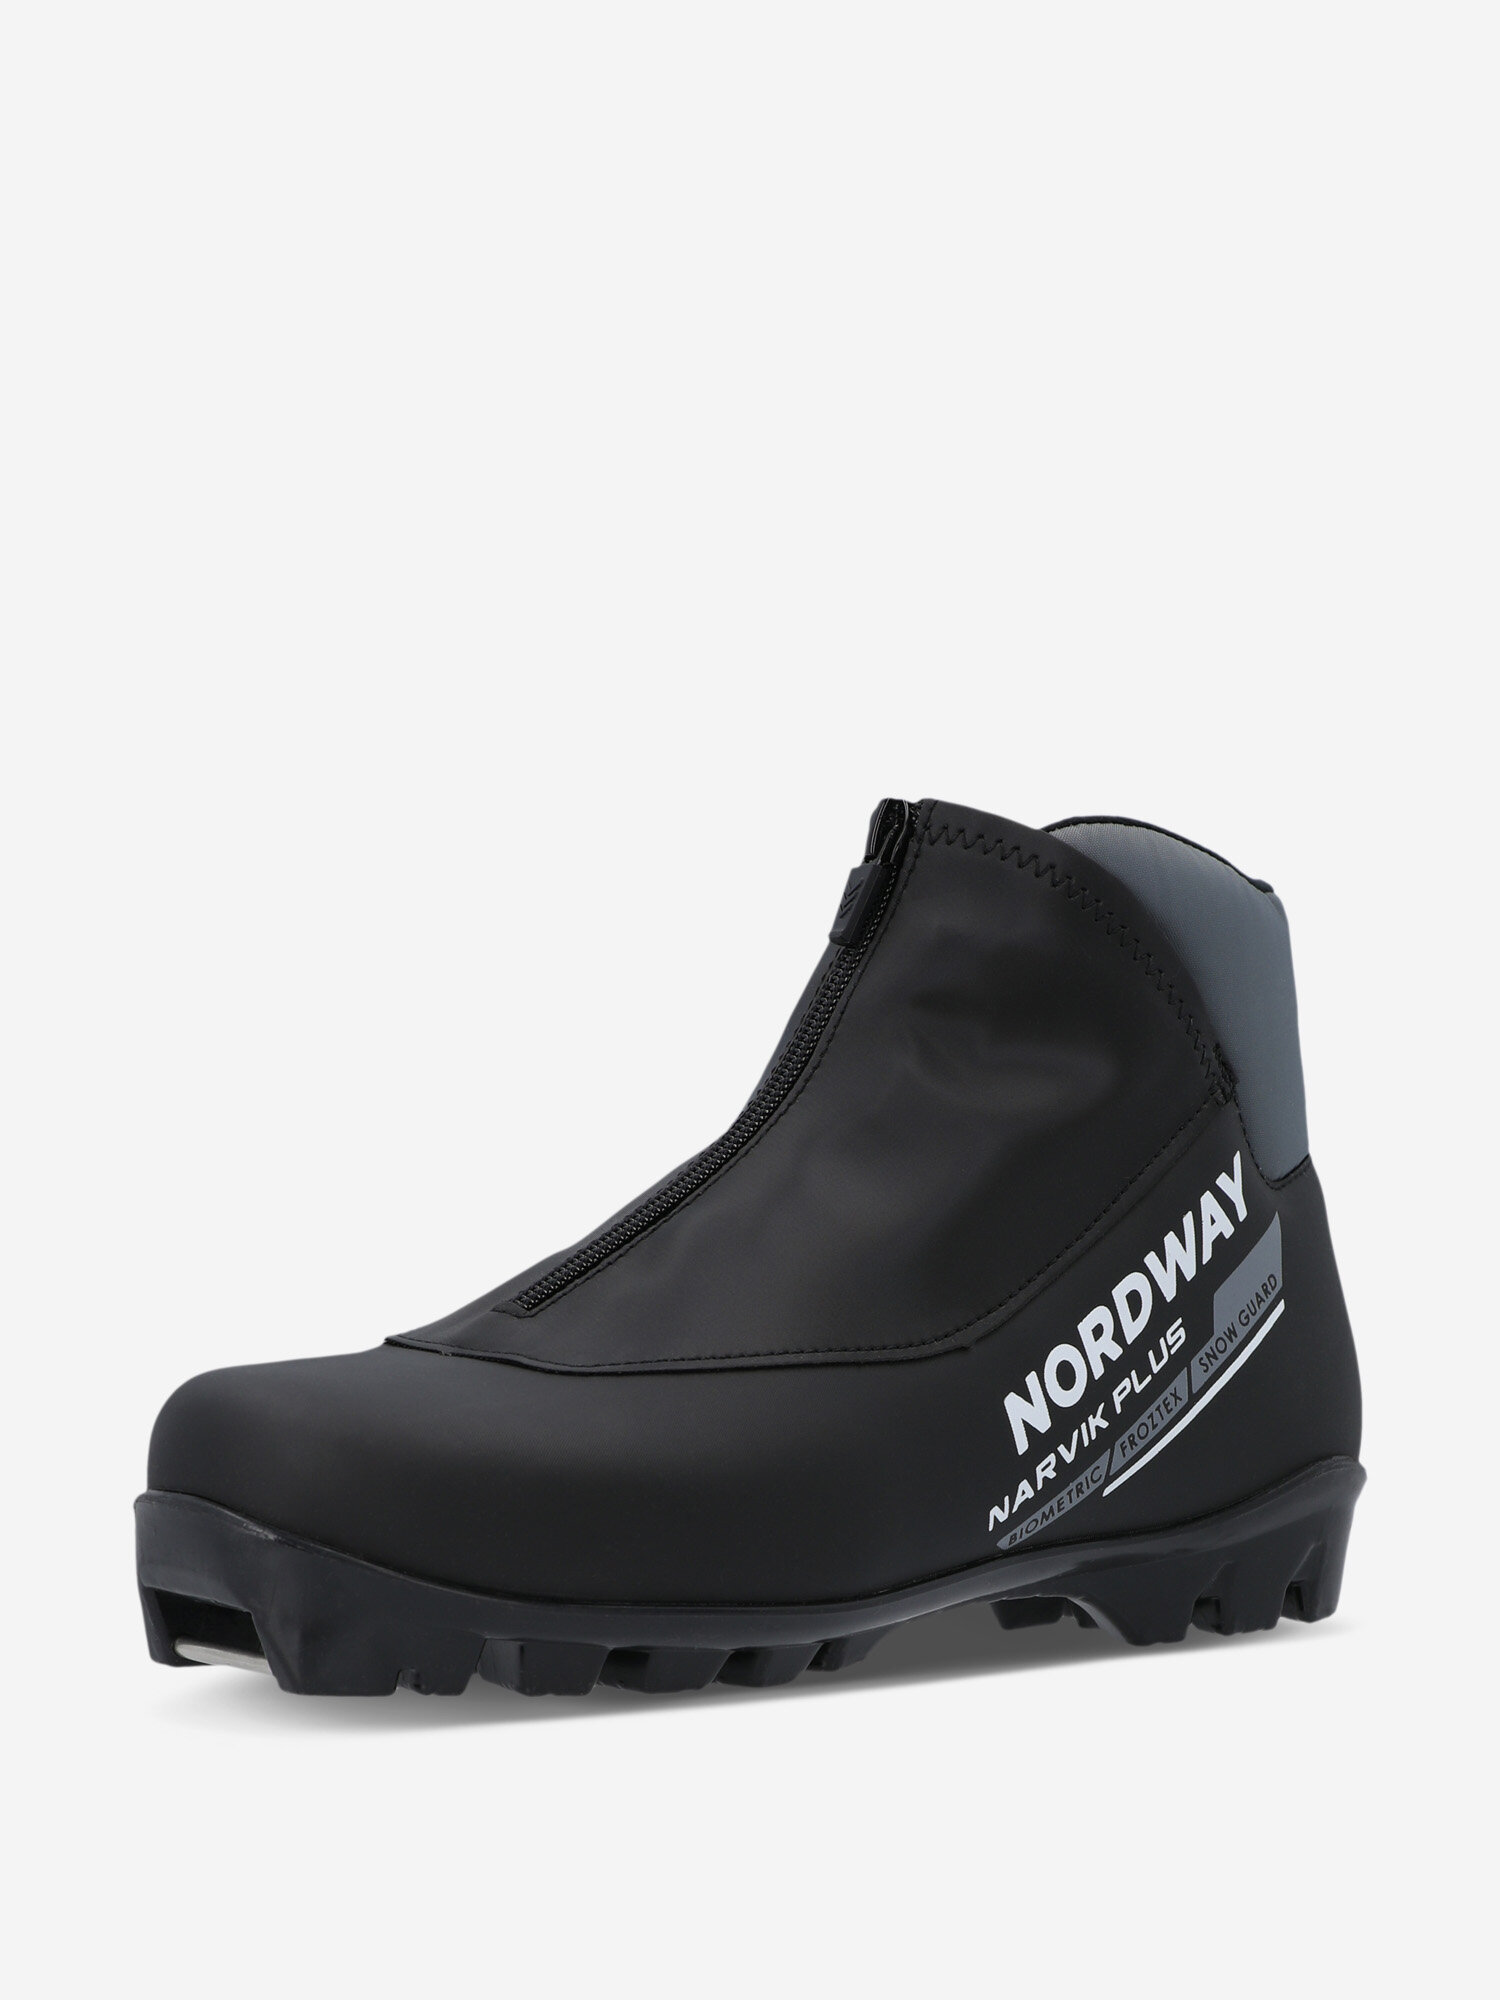 Ботинки для беговых лыж Nordway Narvik Plus NNN Черный; RUS: 43, Ориг: 44